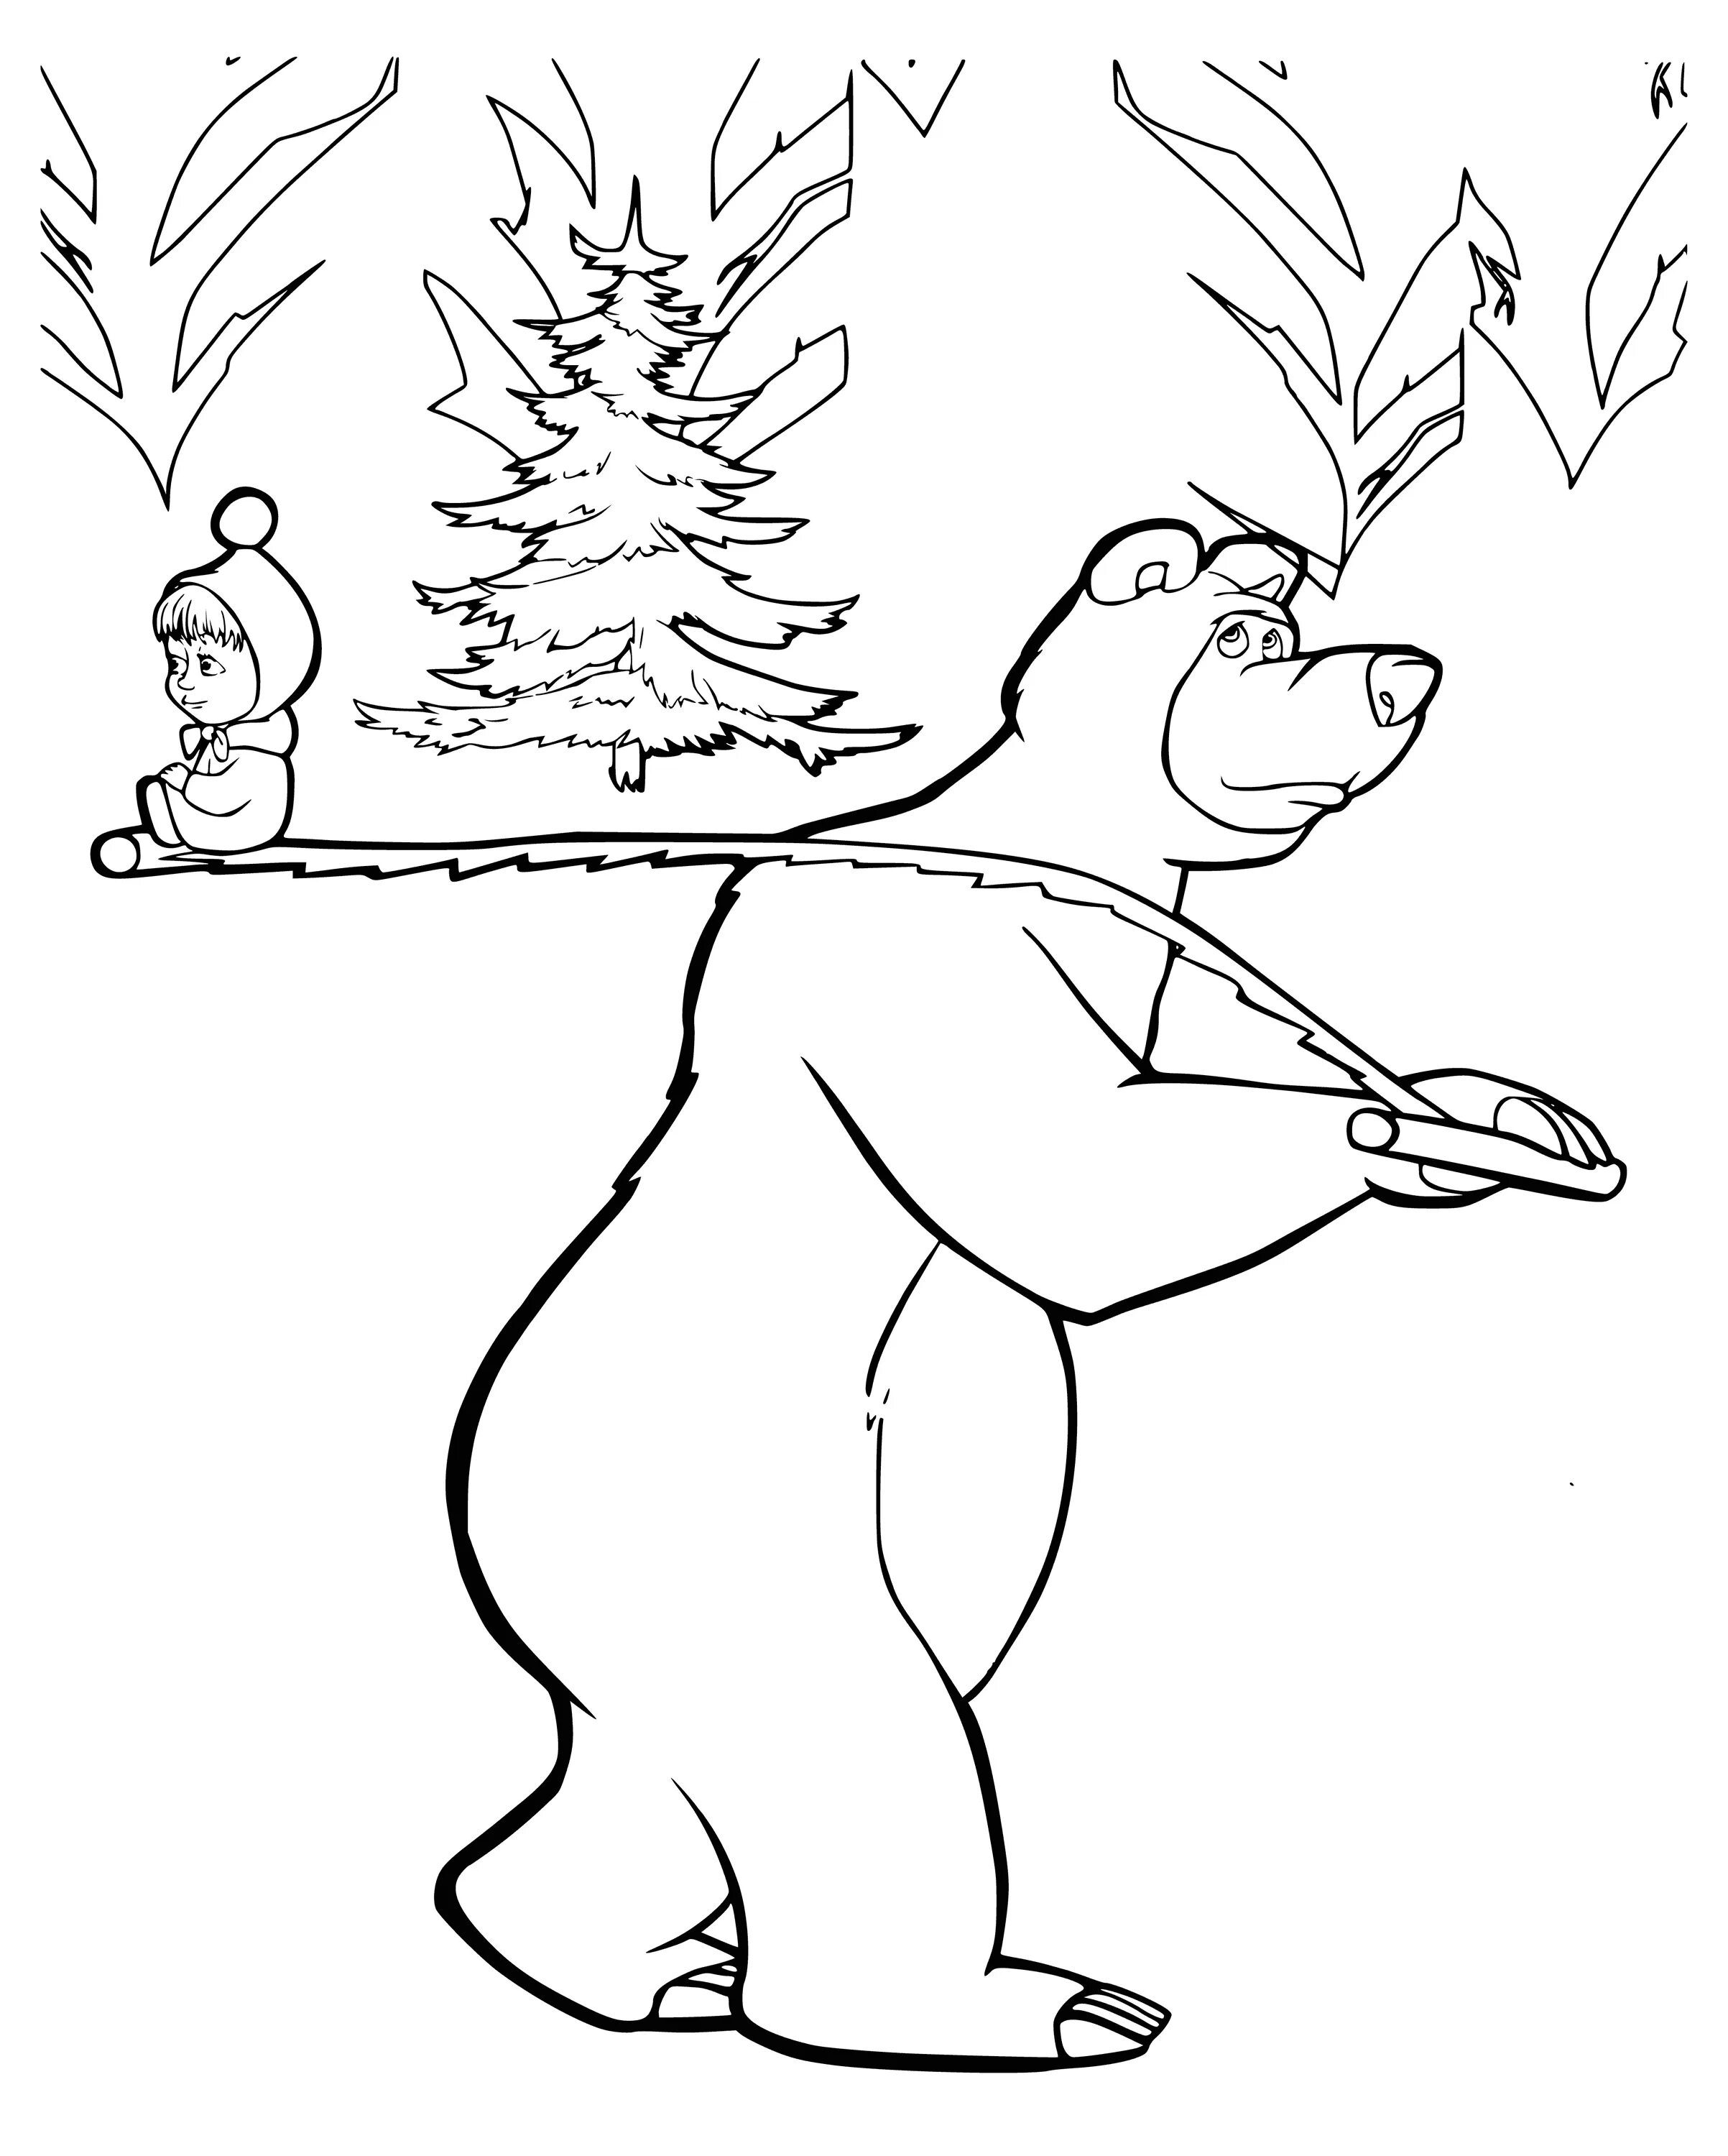 Разукрашку Маша и медведь. Маша и медведь рисунок раскраска. Раскраски для детей из мультфильмов Маша и медведь. Раскраски герои мультфильмов Маша и медведь. Раскраски маша и медведь распечатать формат а4